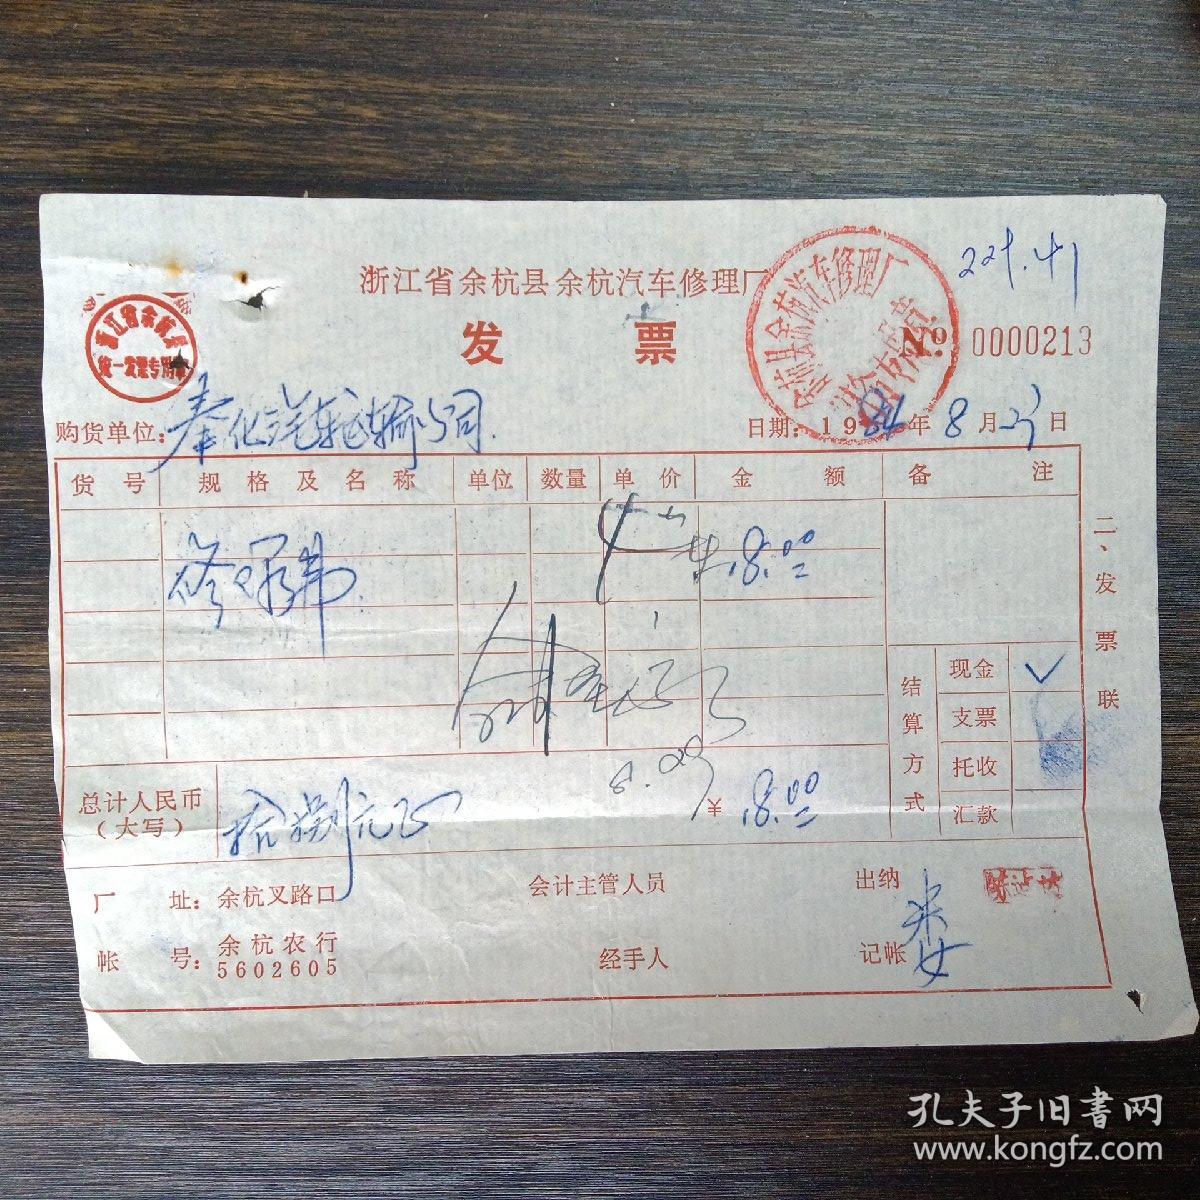 浙江省余杭县余杭汽车修理厂修理费发票一张（1984年）